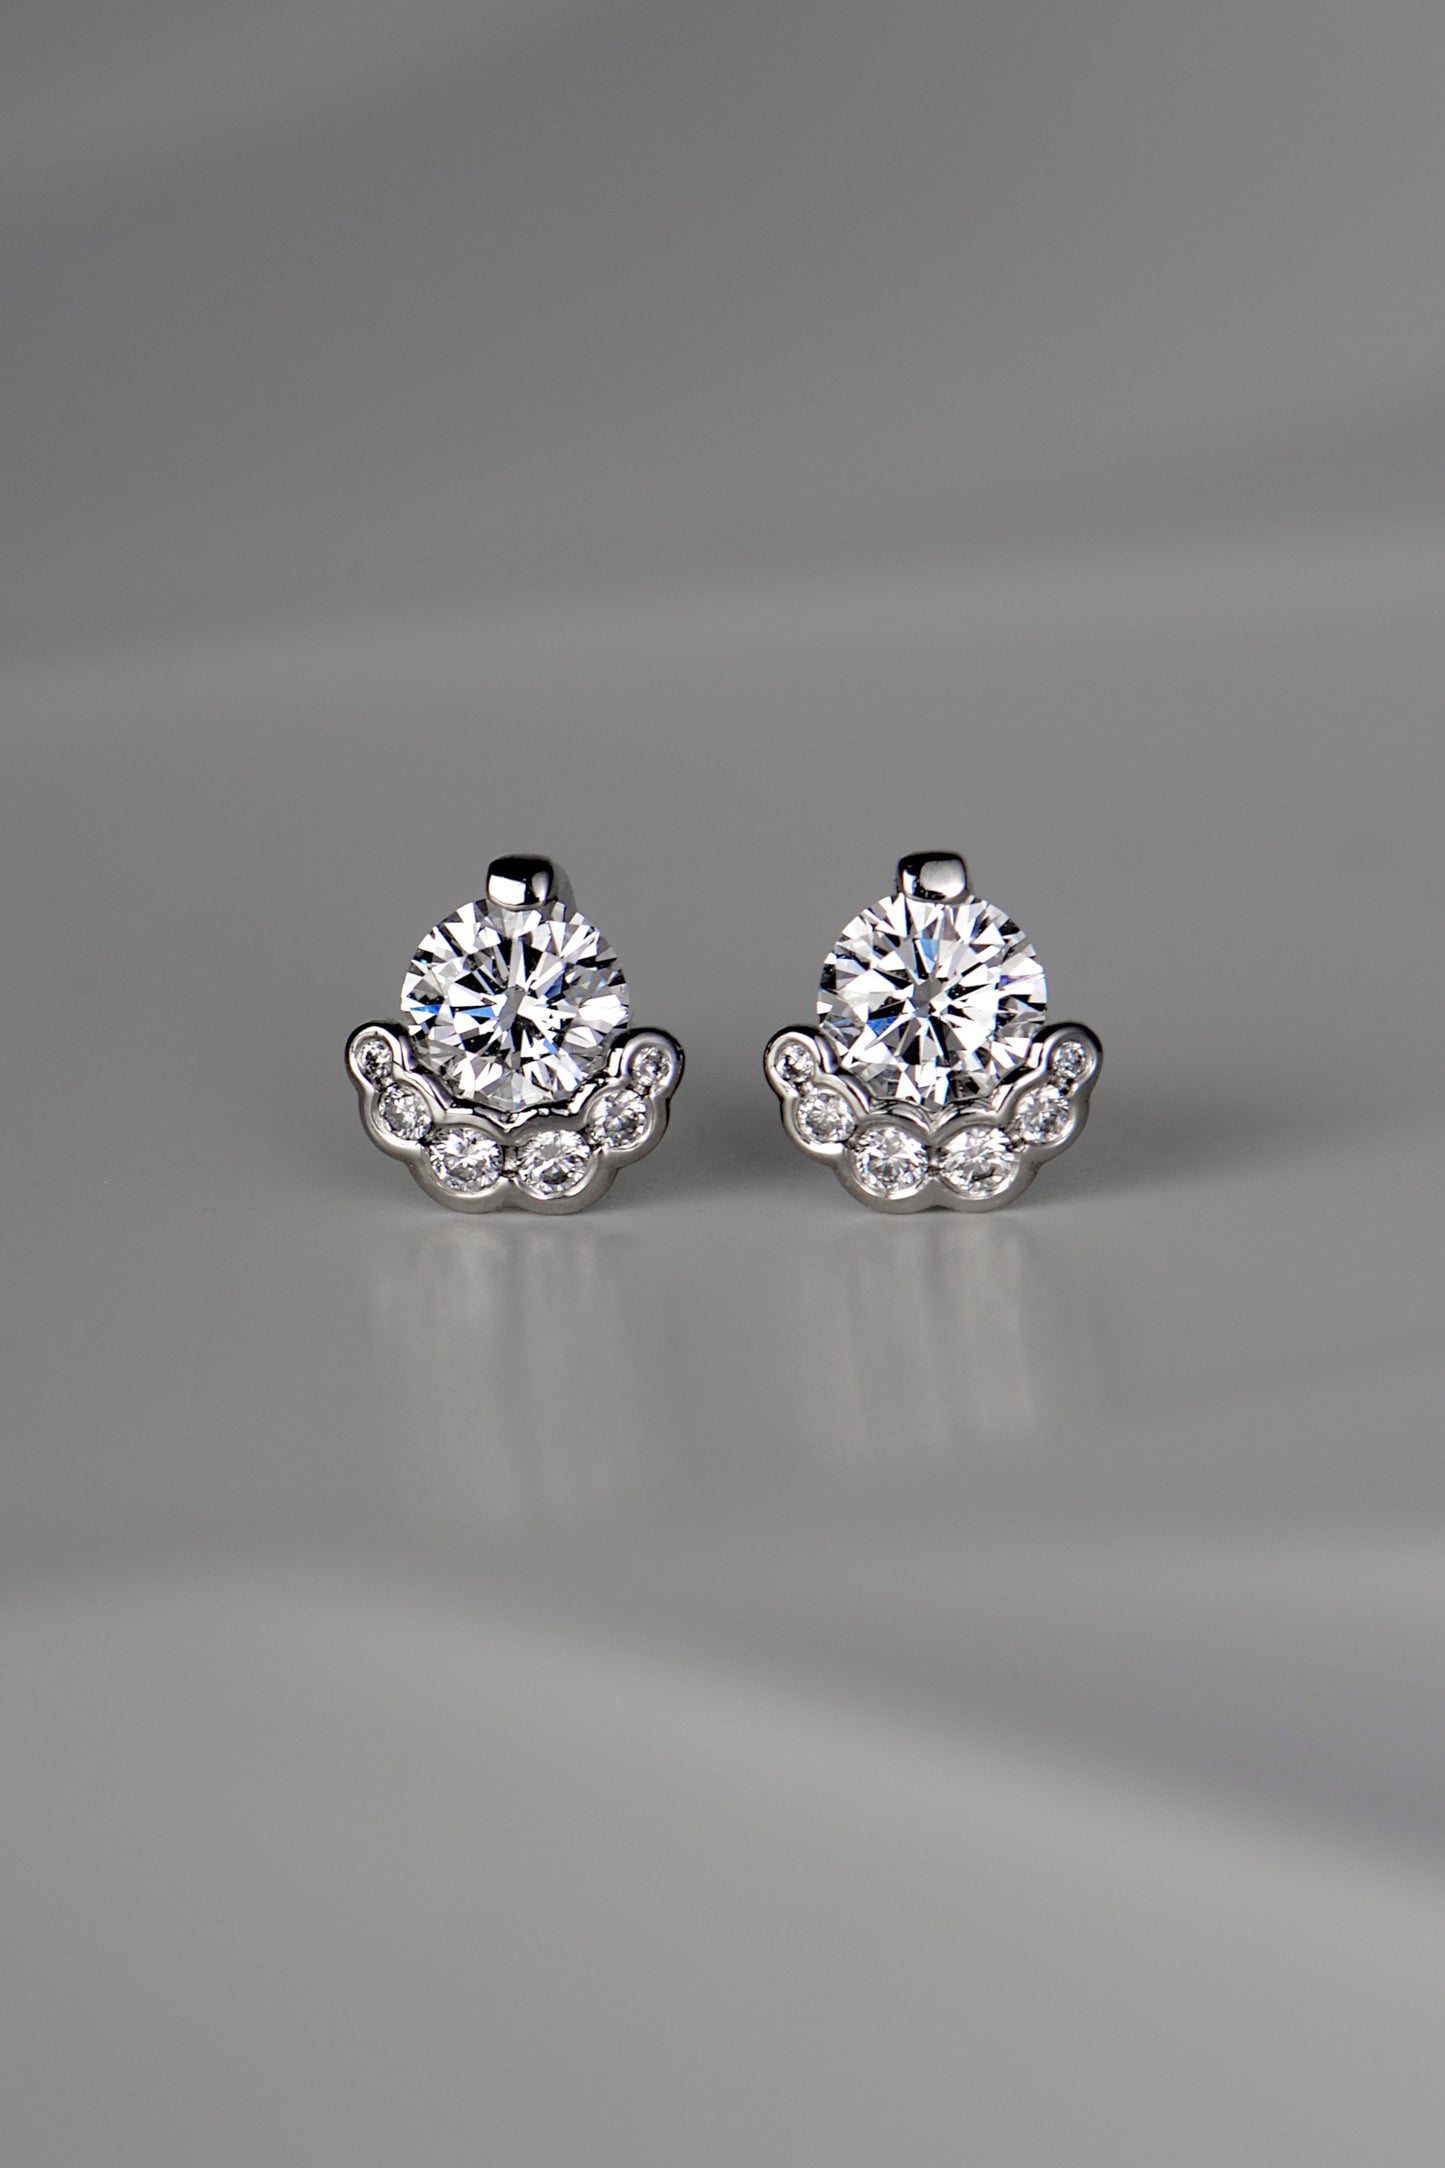 Fairypools diamond earrings